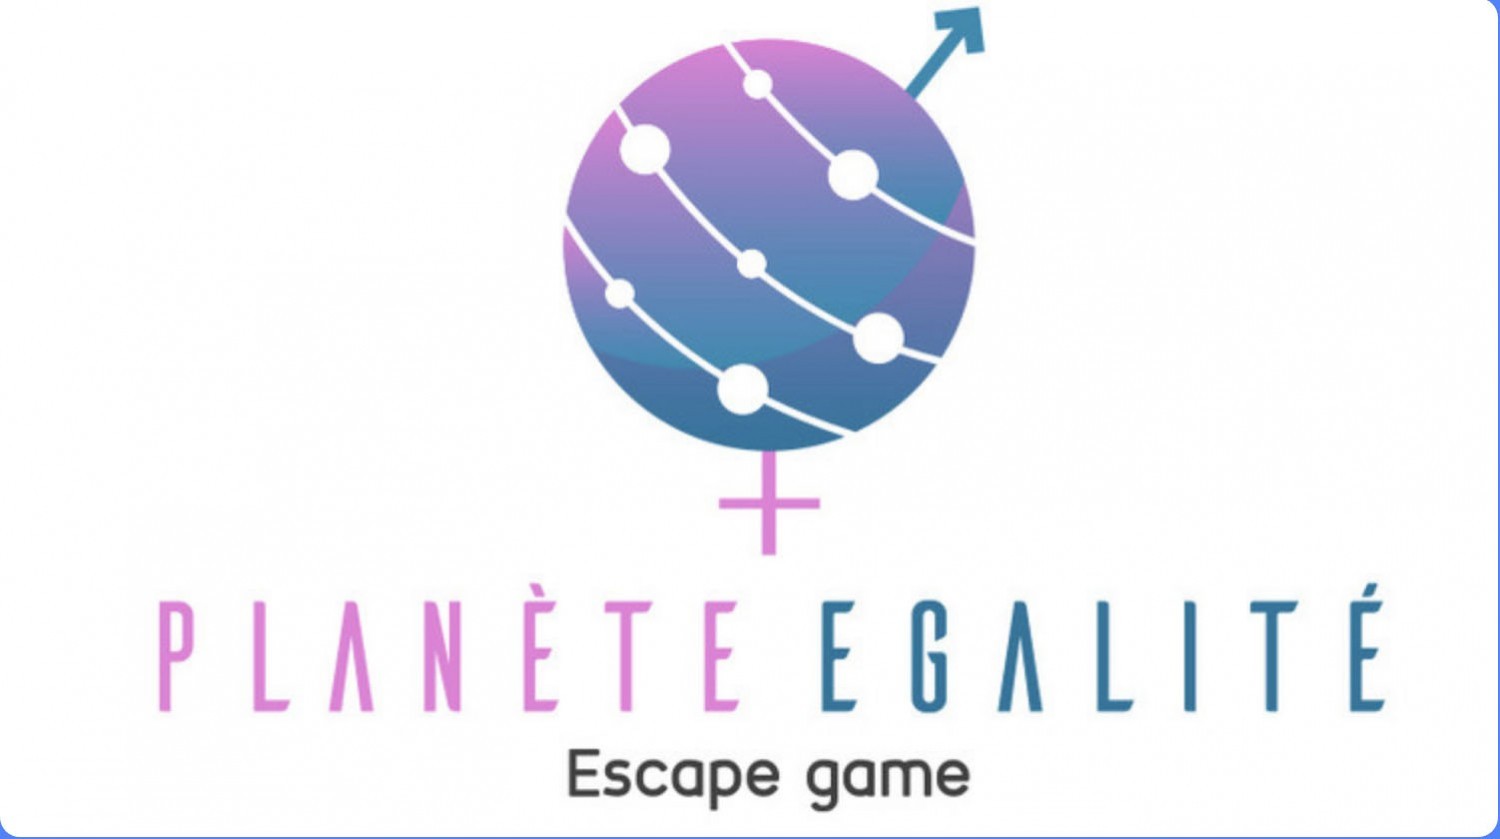 Planète égalité : un escape game pour sensibiliser les jeunes aux stéréotypes de genre